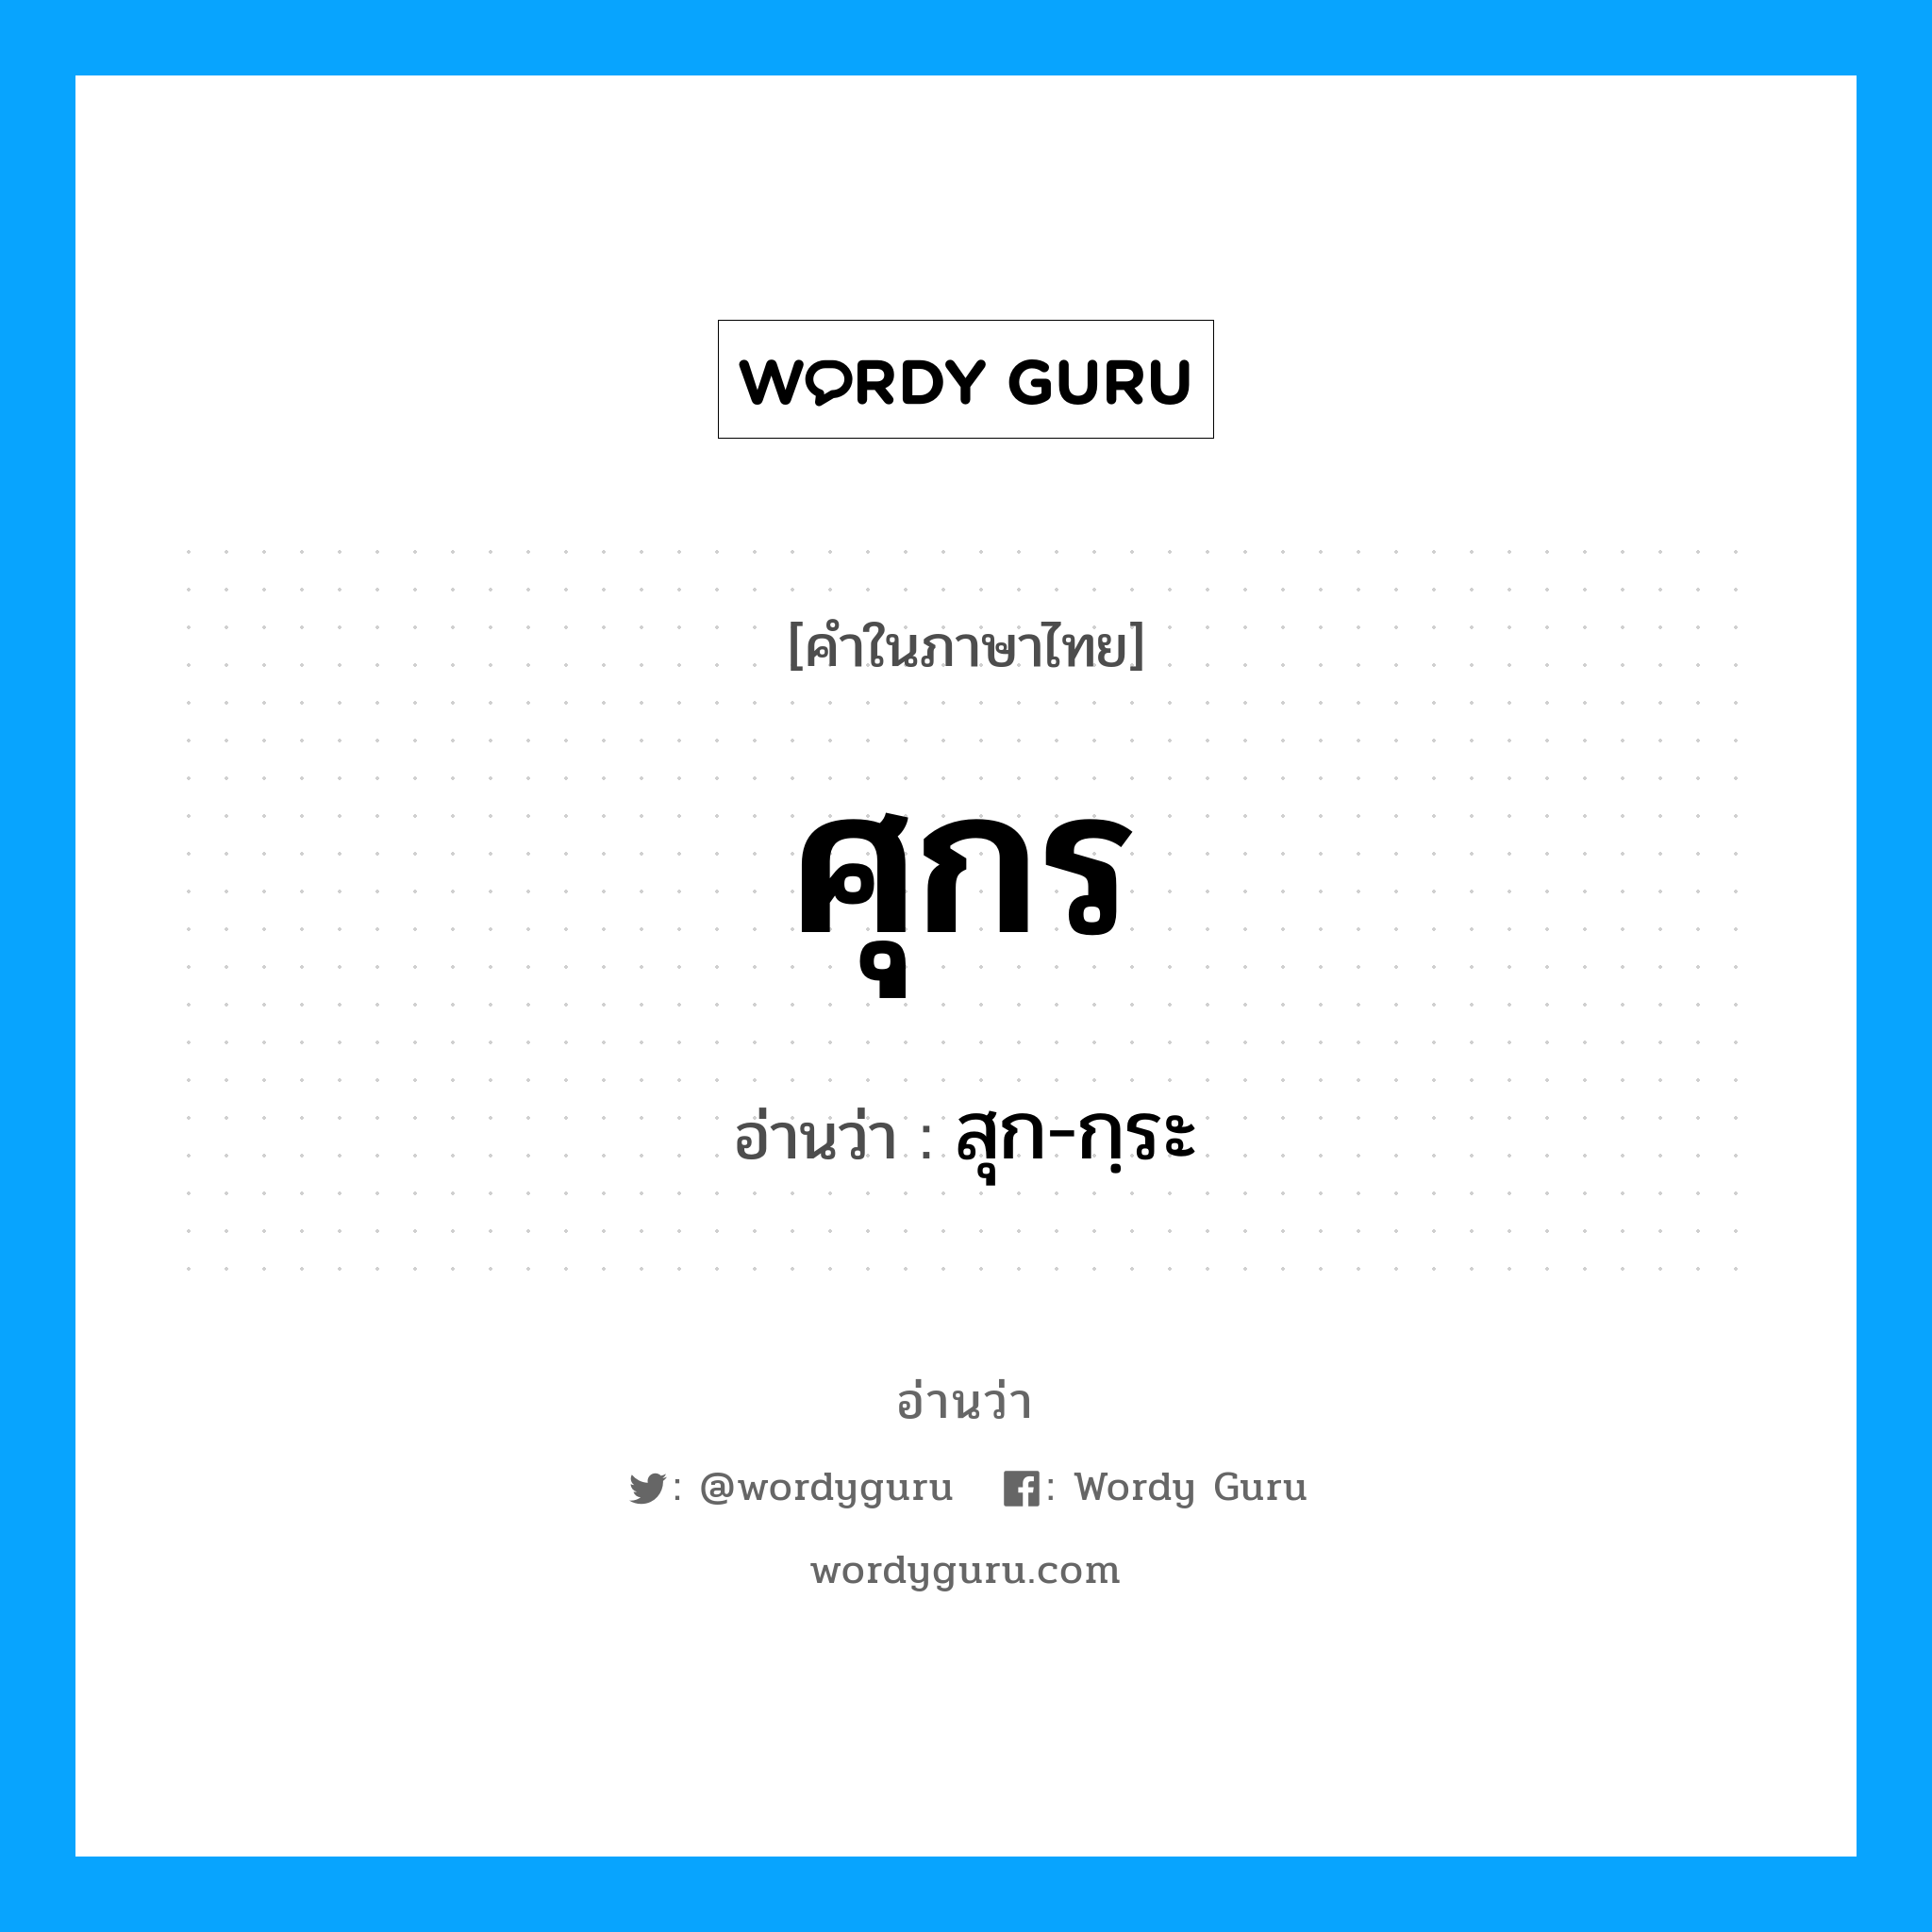 สุก-กฺระ เป็นคำอ่านของคำไหน?, คำในภาษาไทย สุก-กฺระ อ่านว่า ศุกร